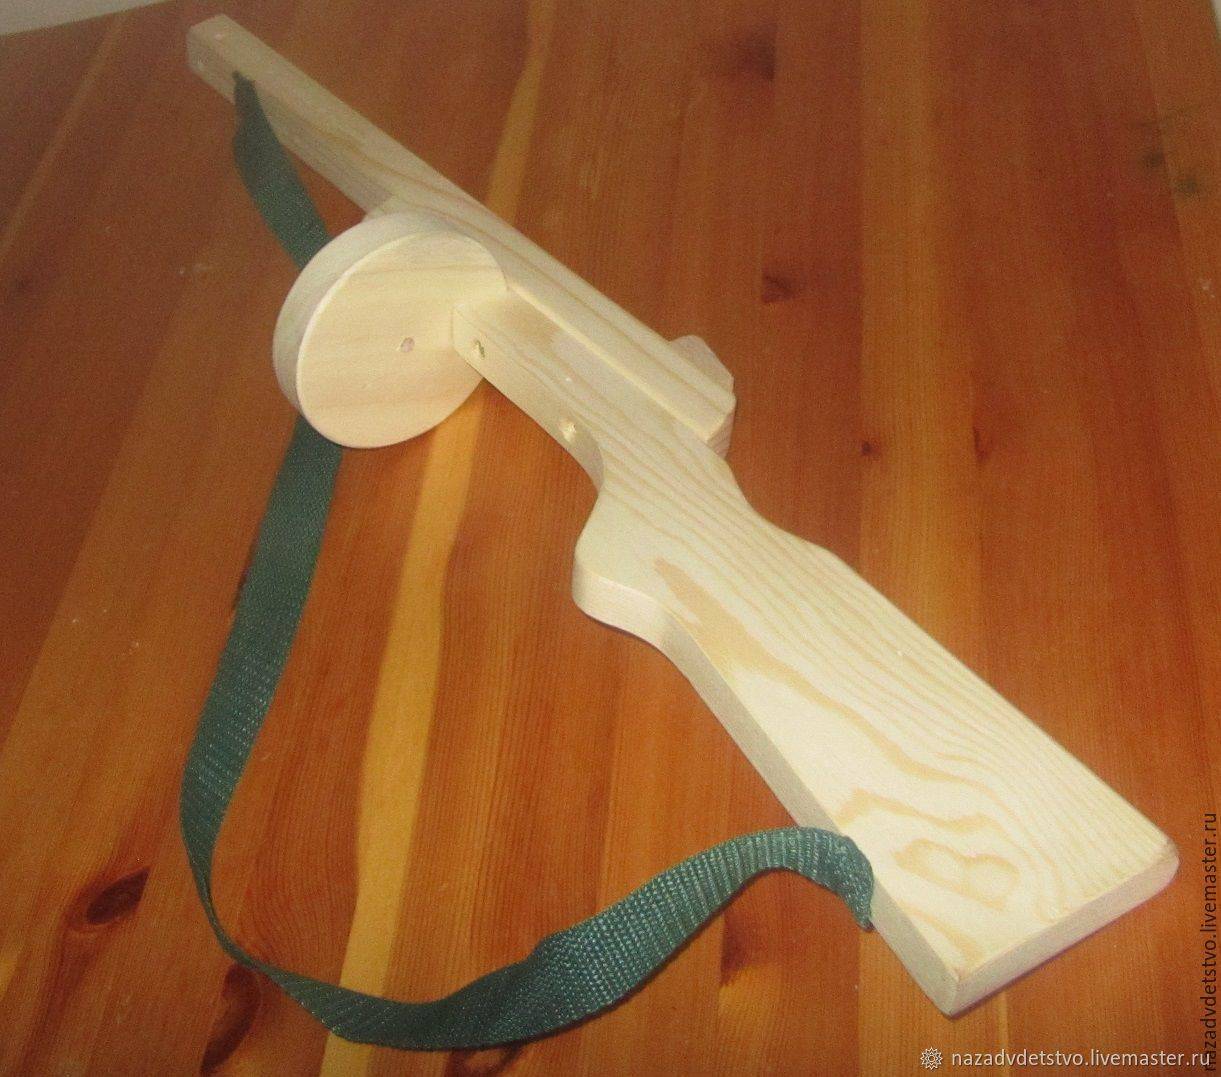 ✅ как сделать деревянный меч за 15 минут своими руками - remont-bil.ru